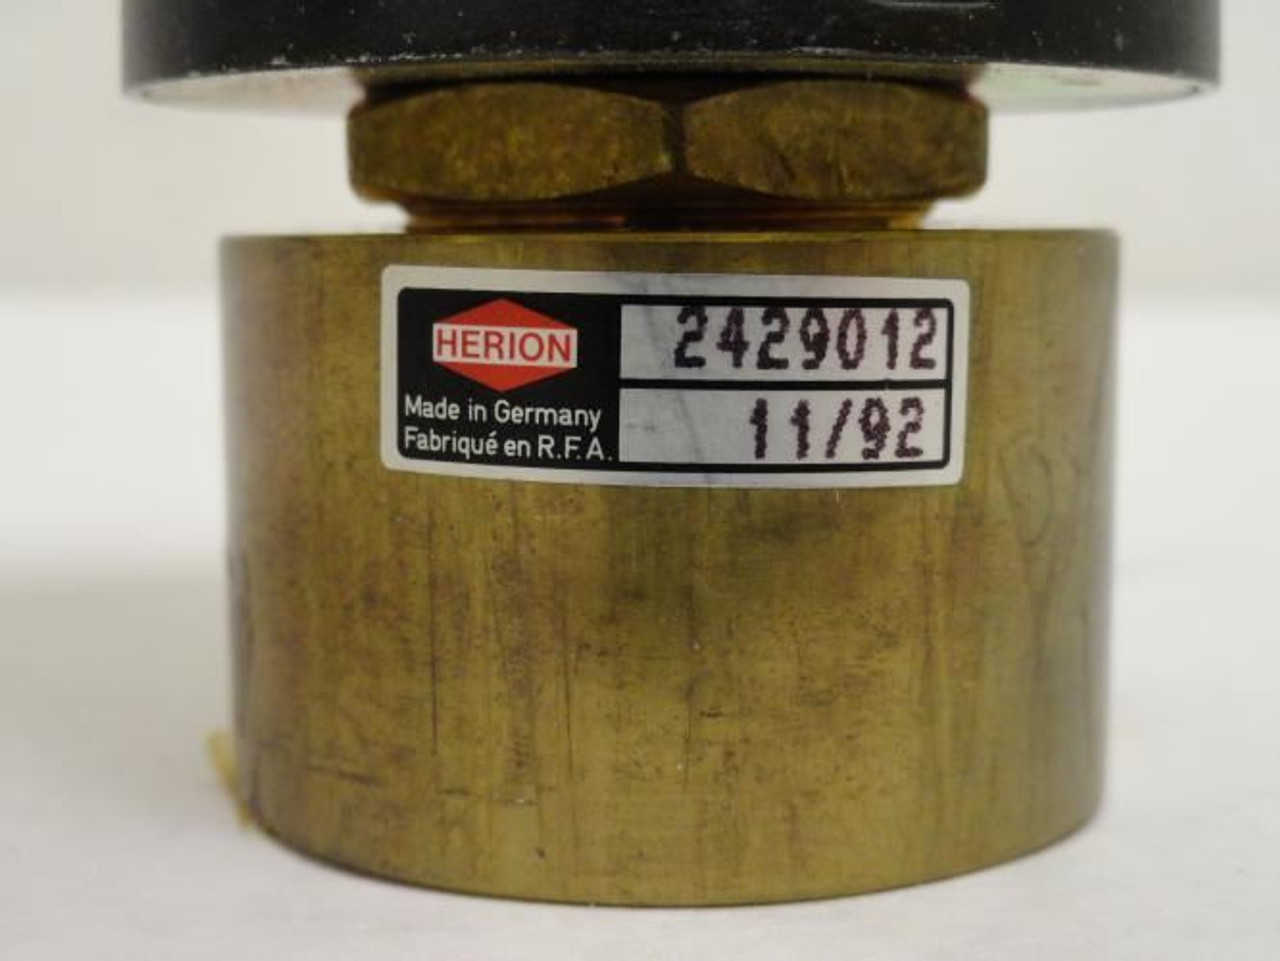 Norgren 2429012; Herion Brass Air Valve; 11V@60Hz; 2.2vA